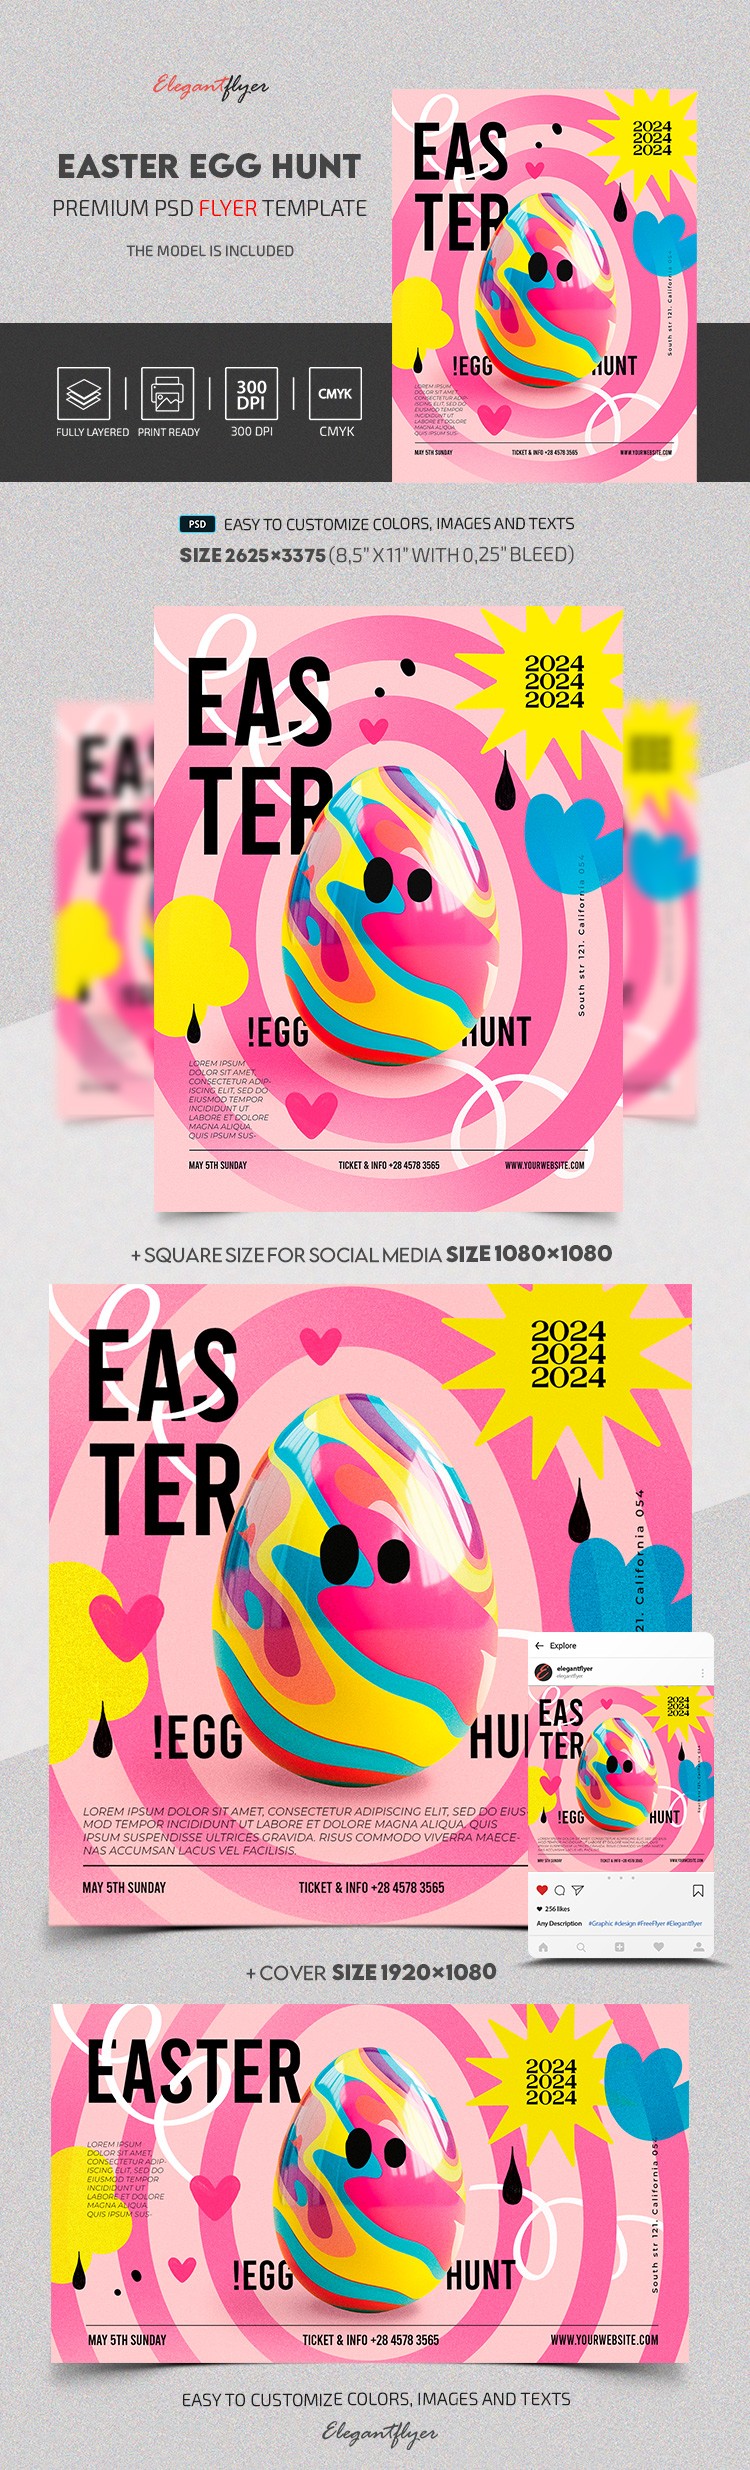 Easter Egg Hunt Party by ElegantFlyer